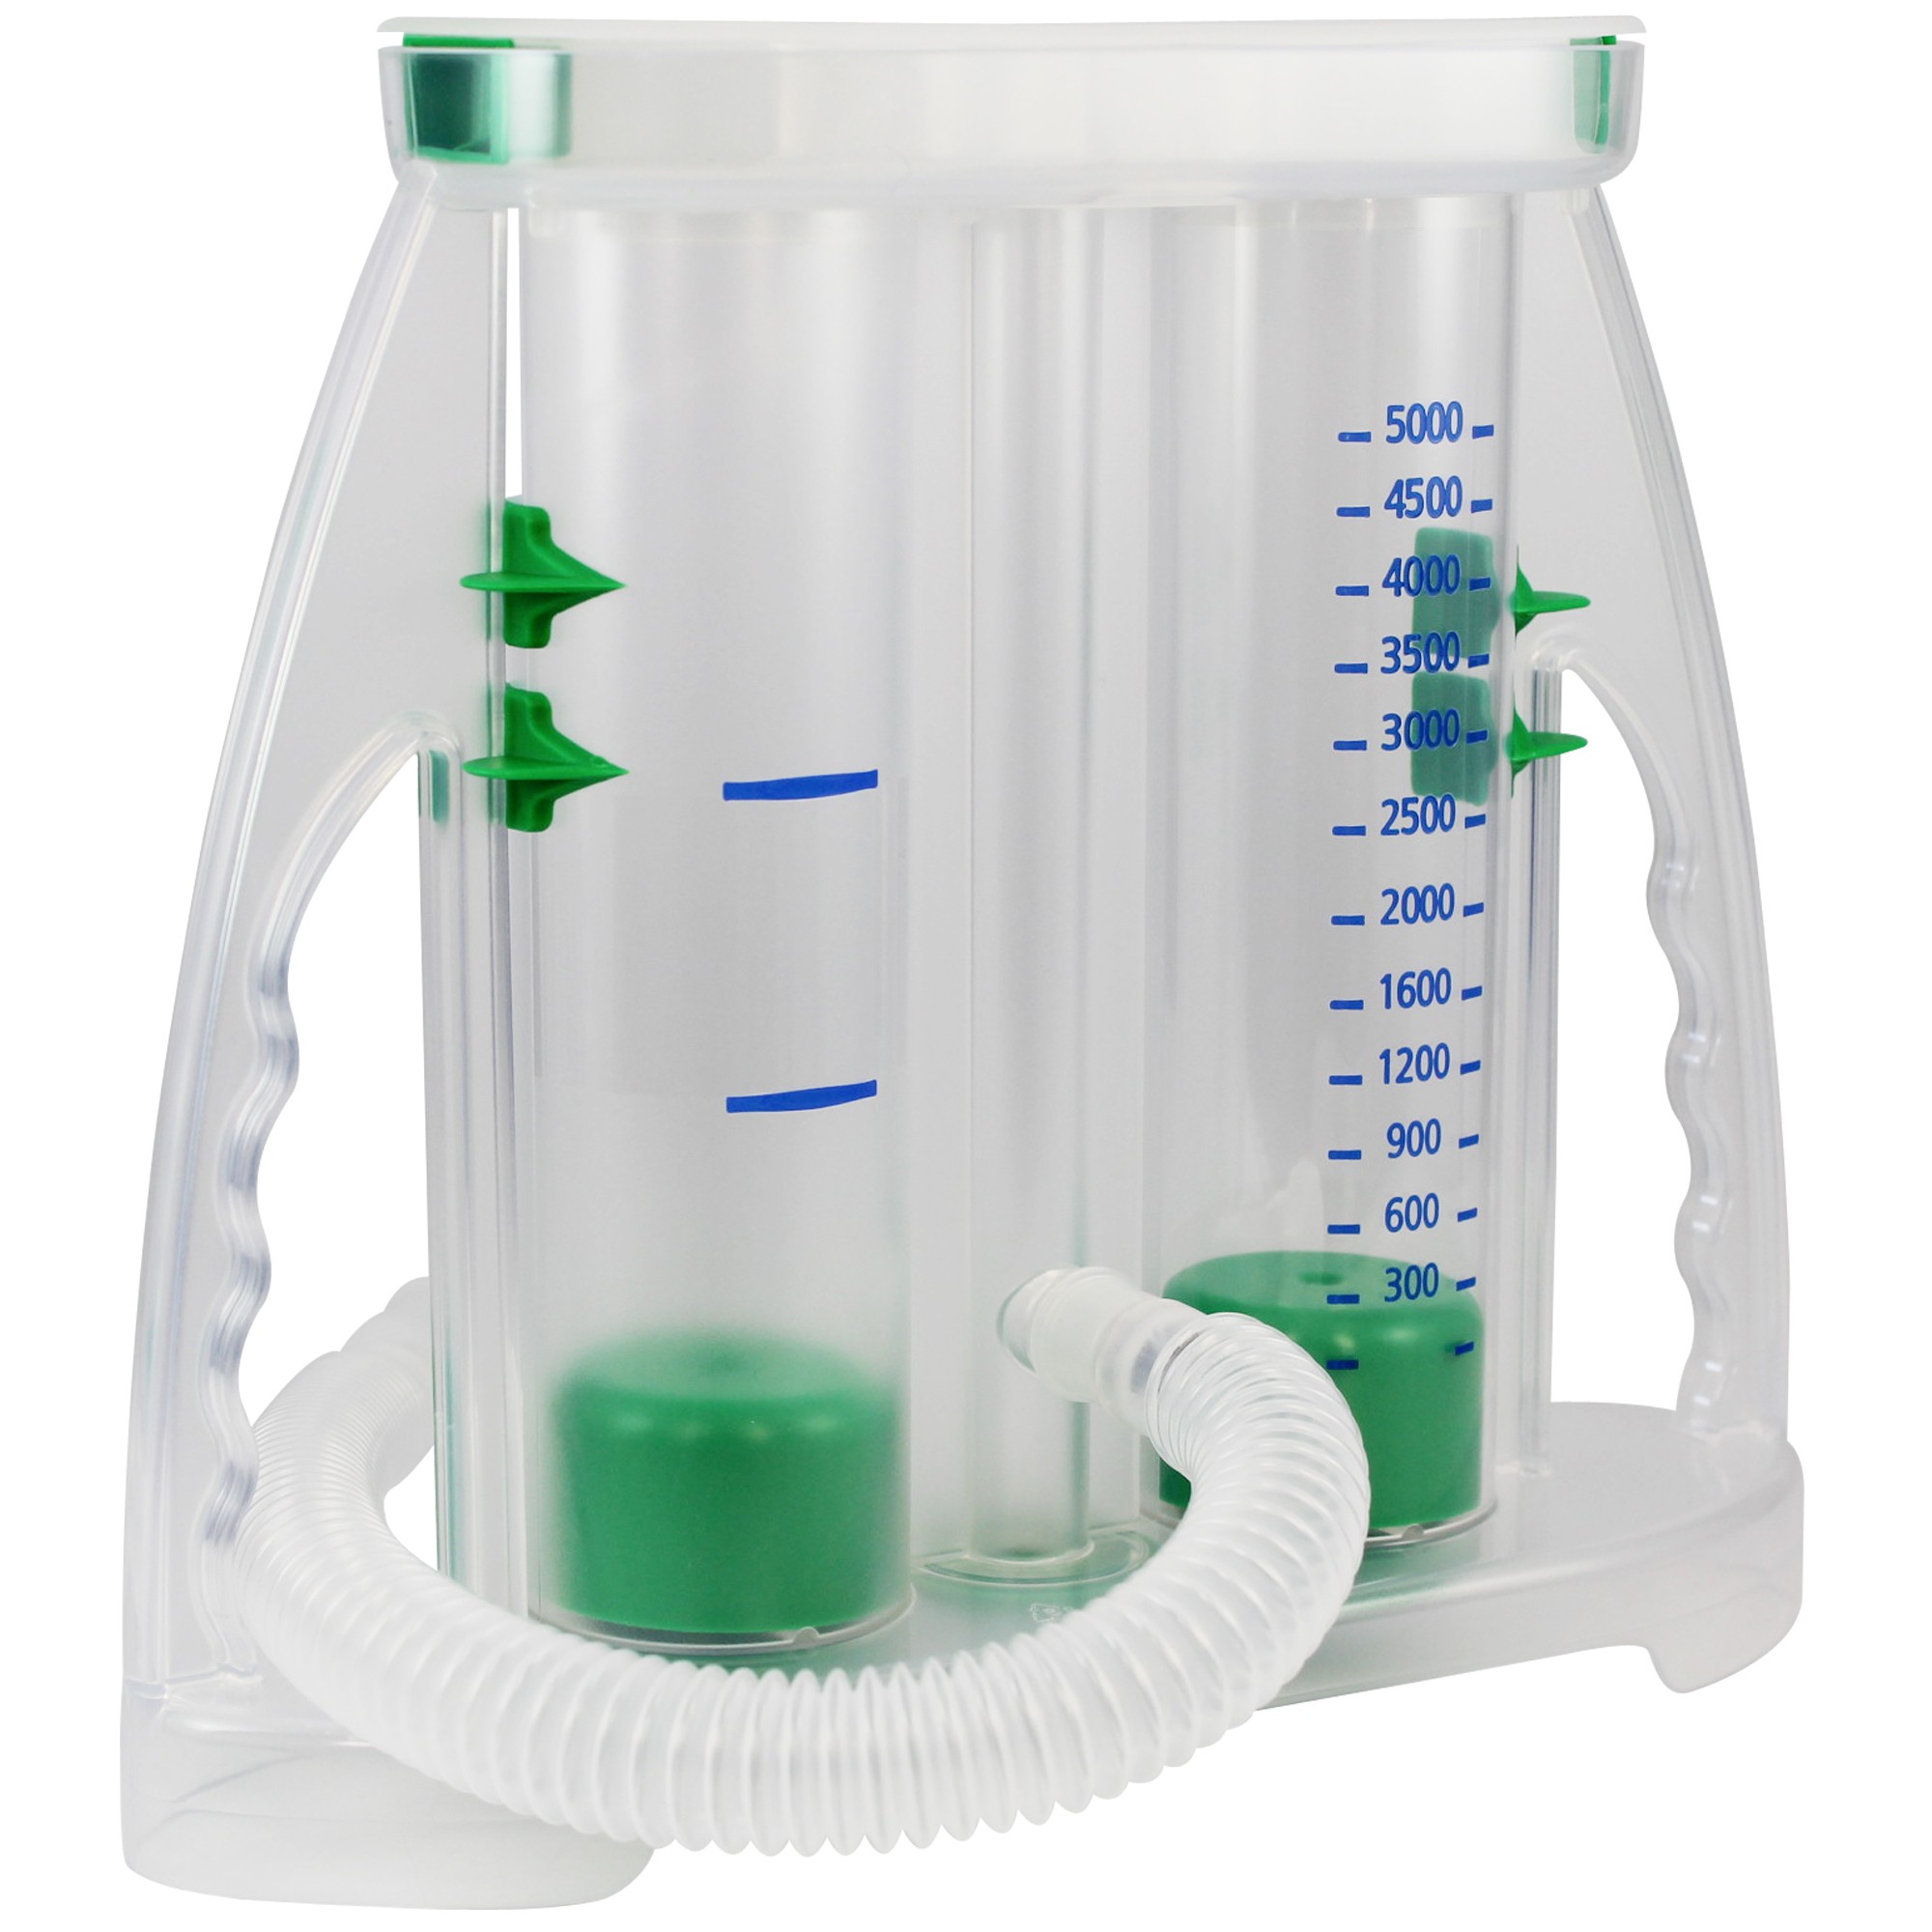 Atemtrainer PULMOVOL Spirometrie in 2 Ausführungen